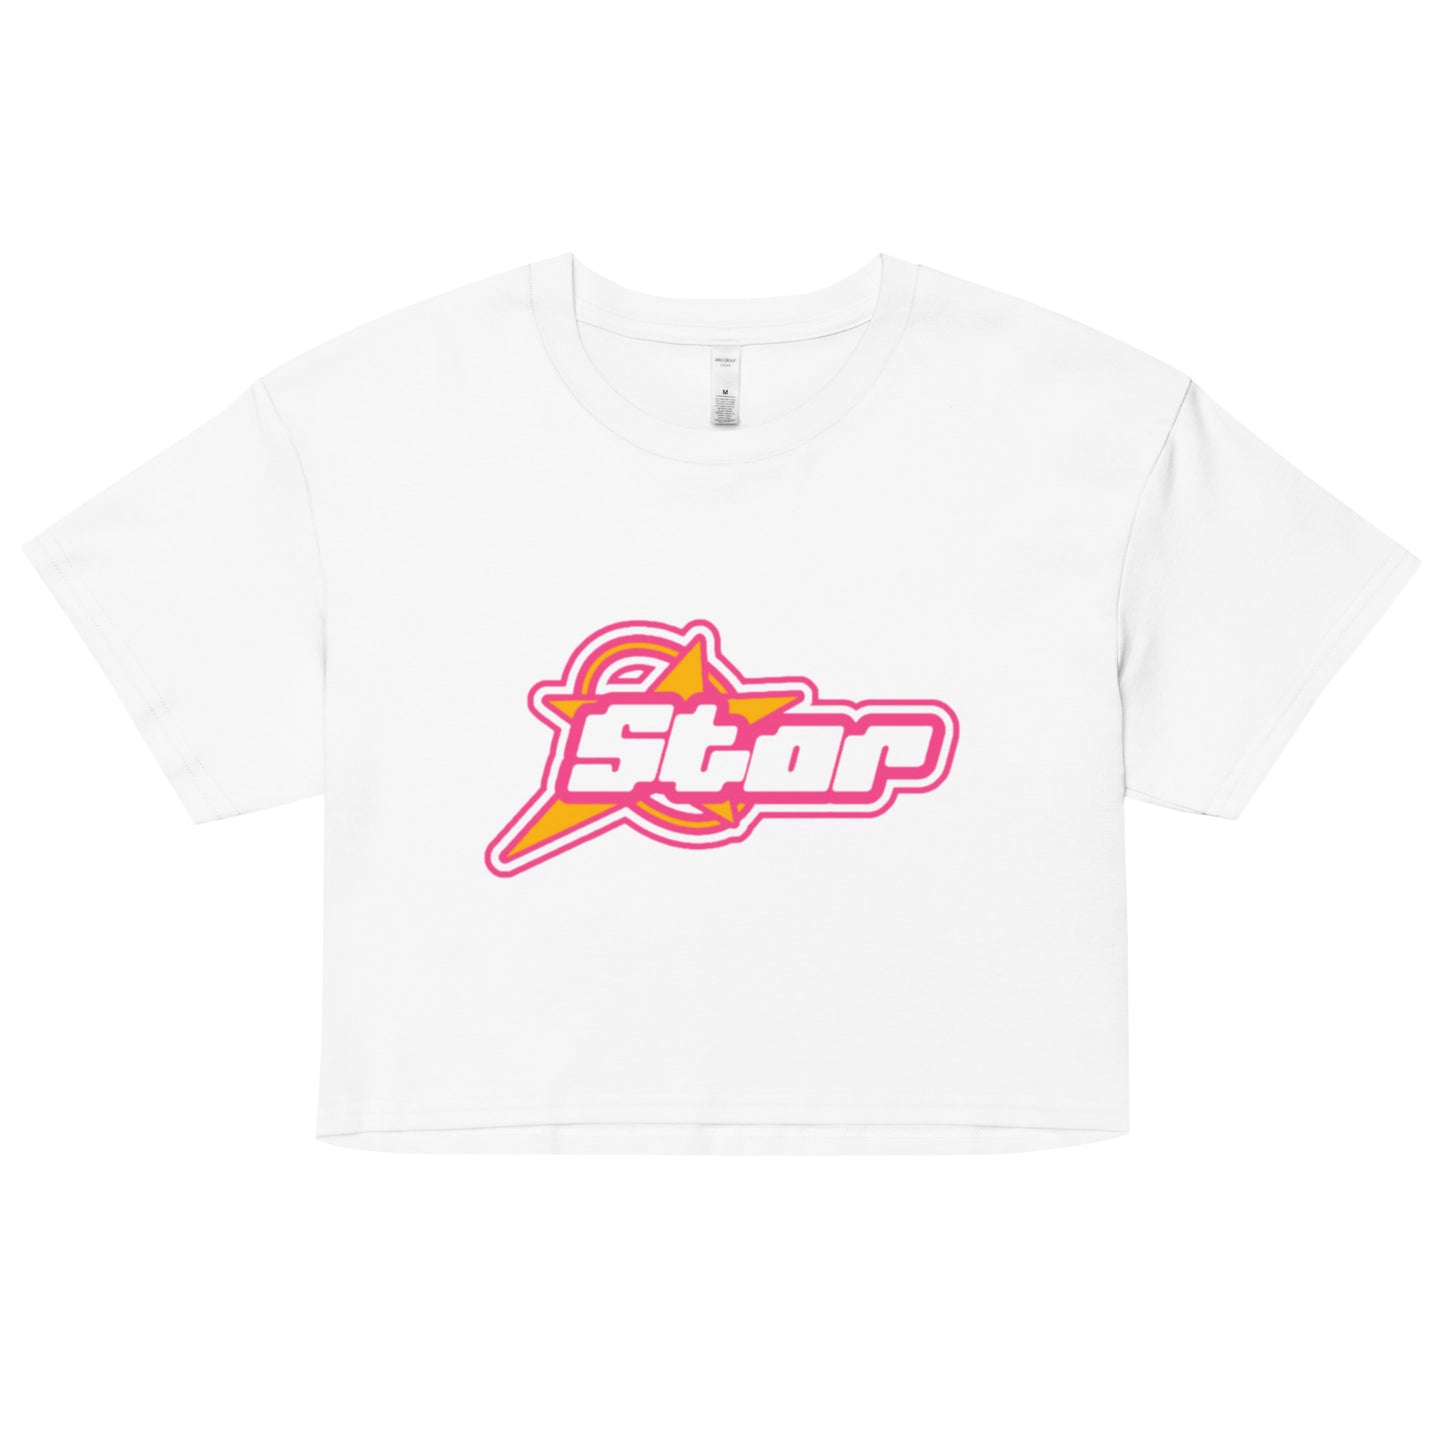 Star T-shirt, Crop Top